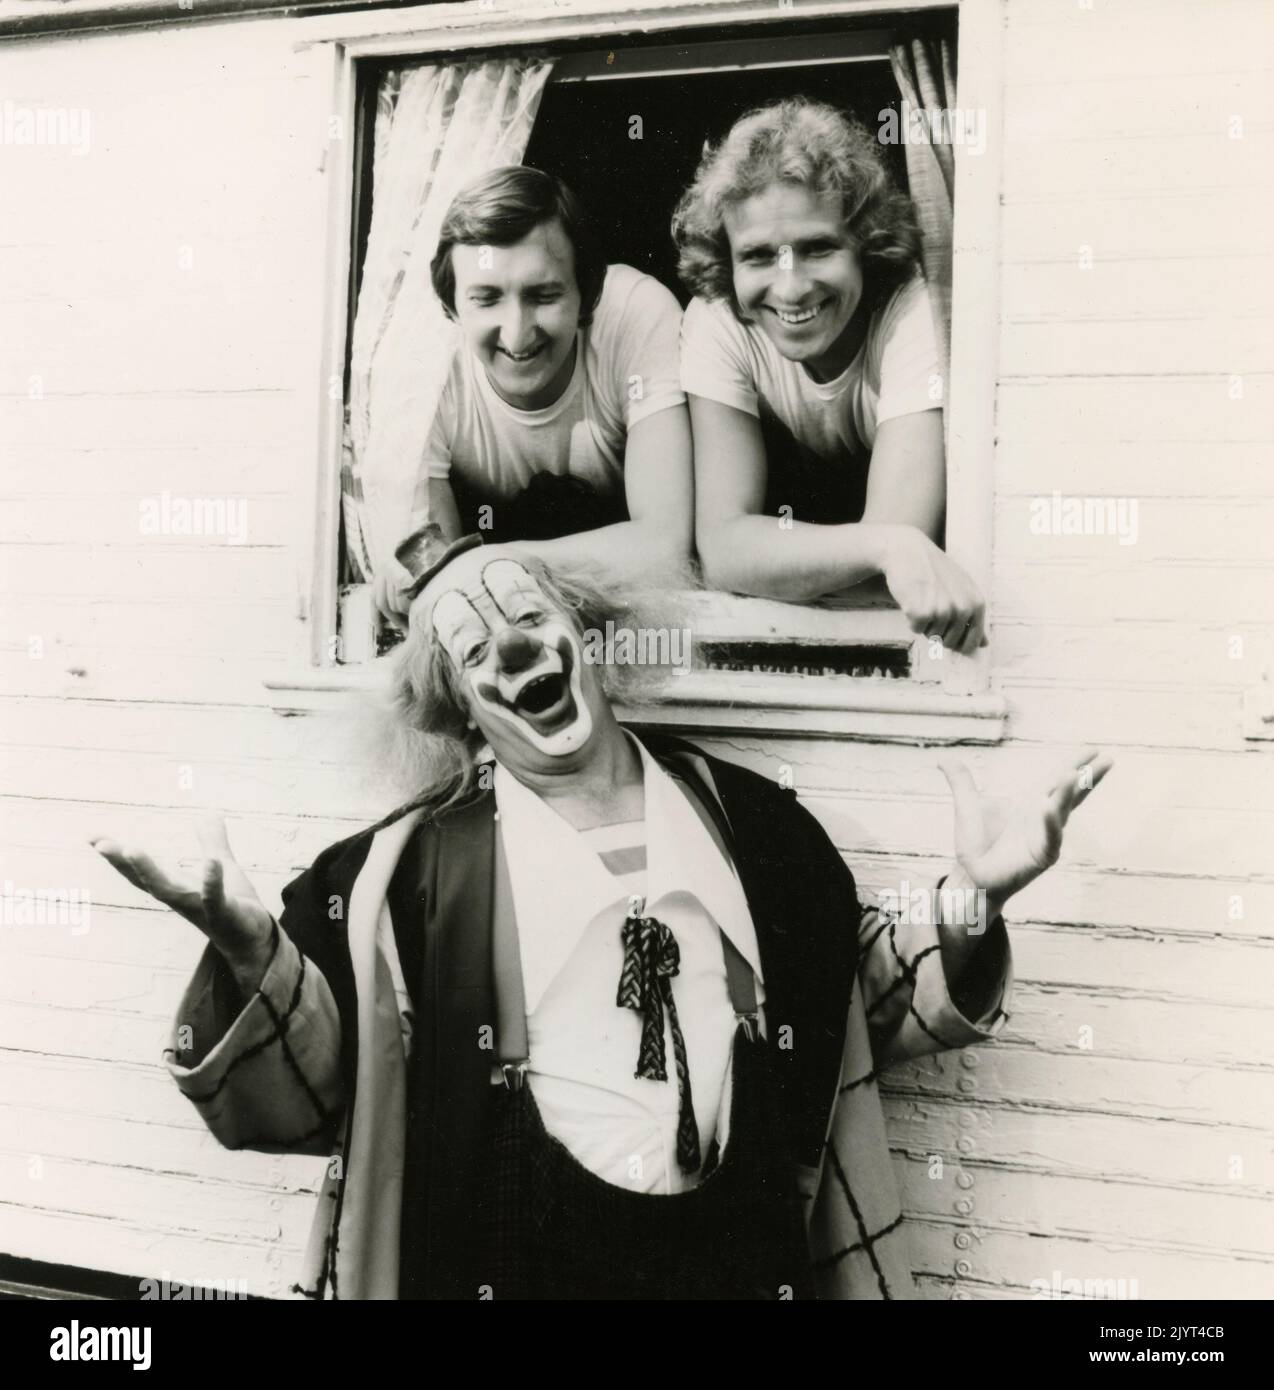 Mike Kruger et Thomas Gottschalk, hôtes de la radio et de la télévision allemandes, avec le clown suisse Walter Galetti, 1990 Banque D'Images